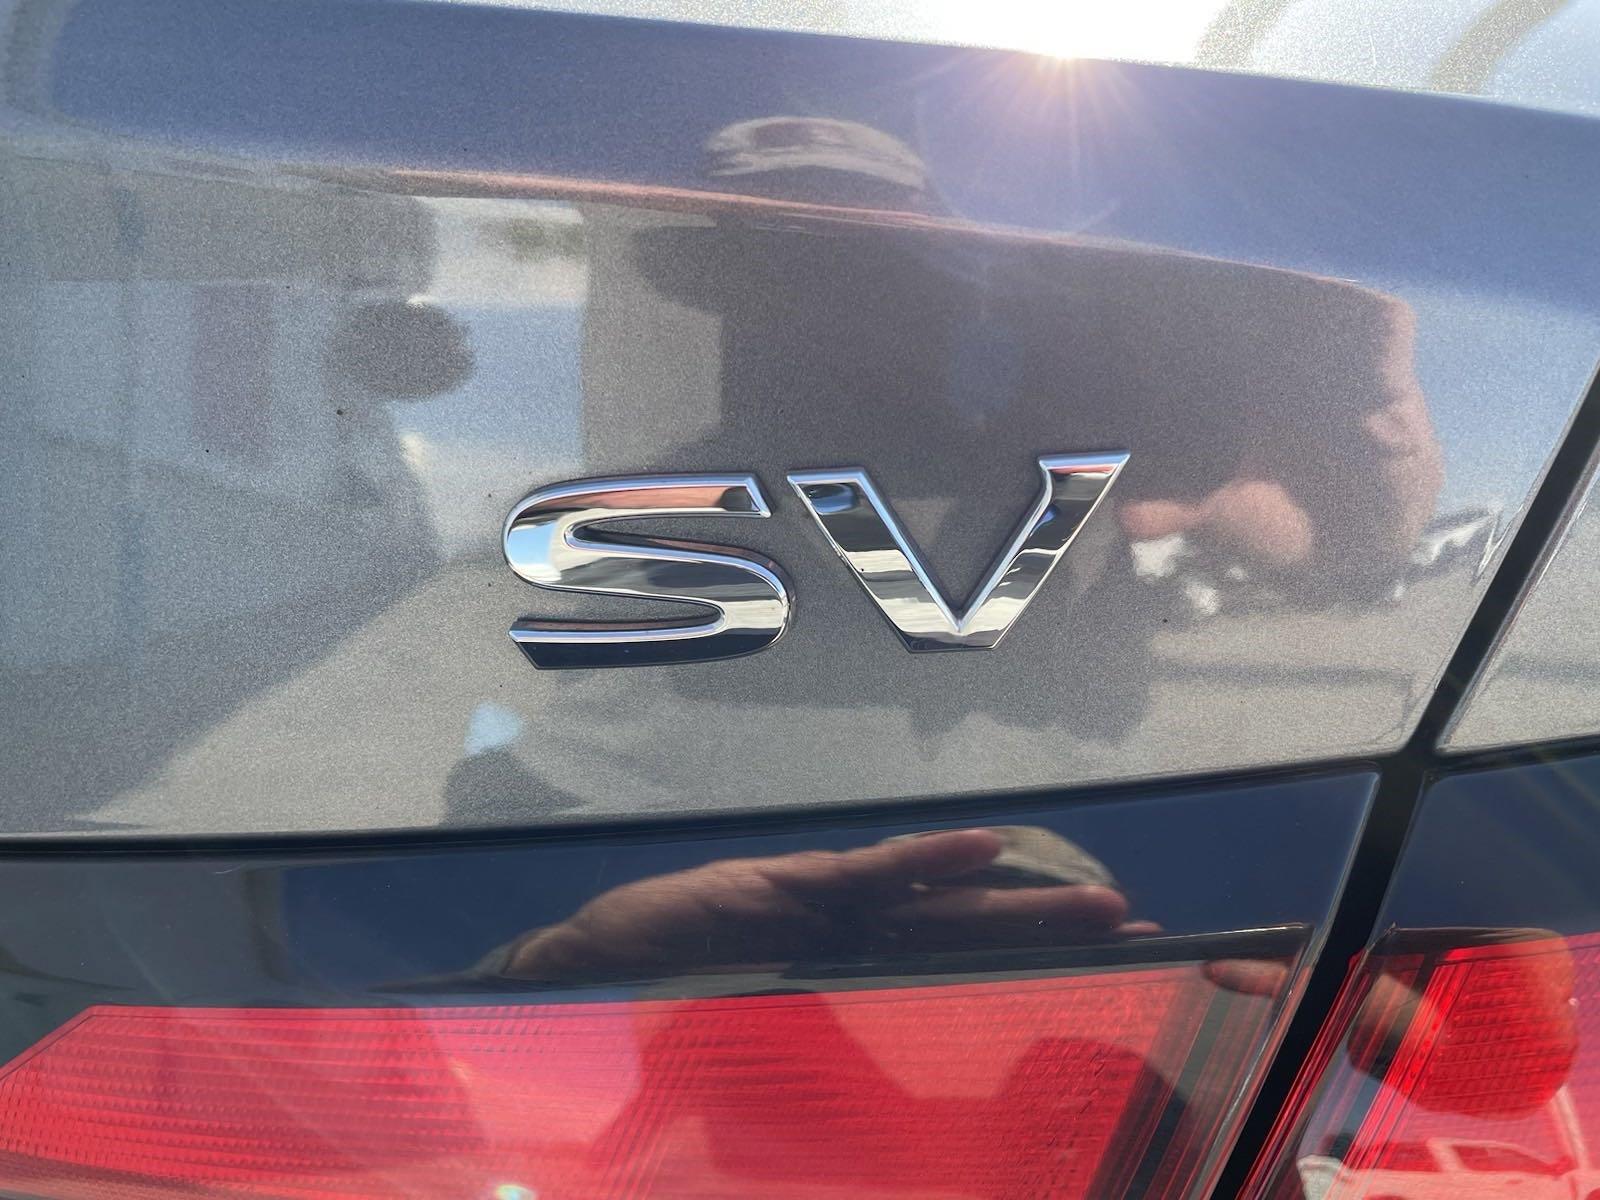 Used 2021 Nissan Versa SV Sedan for sale in Lincoln NE